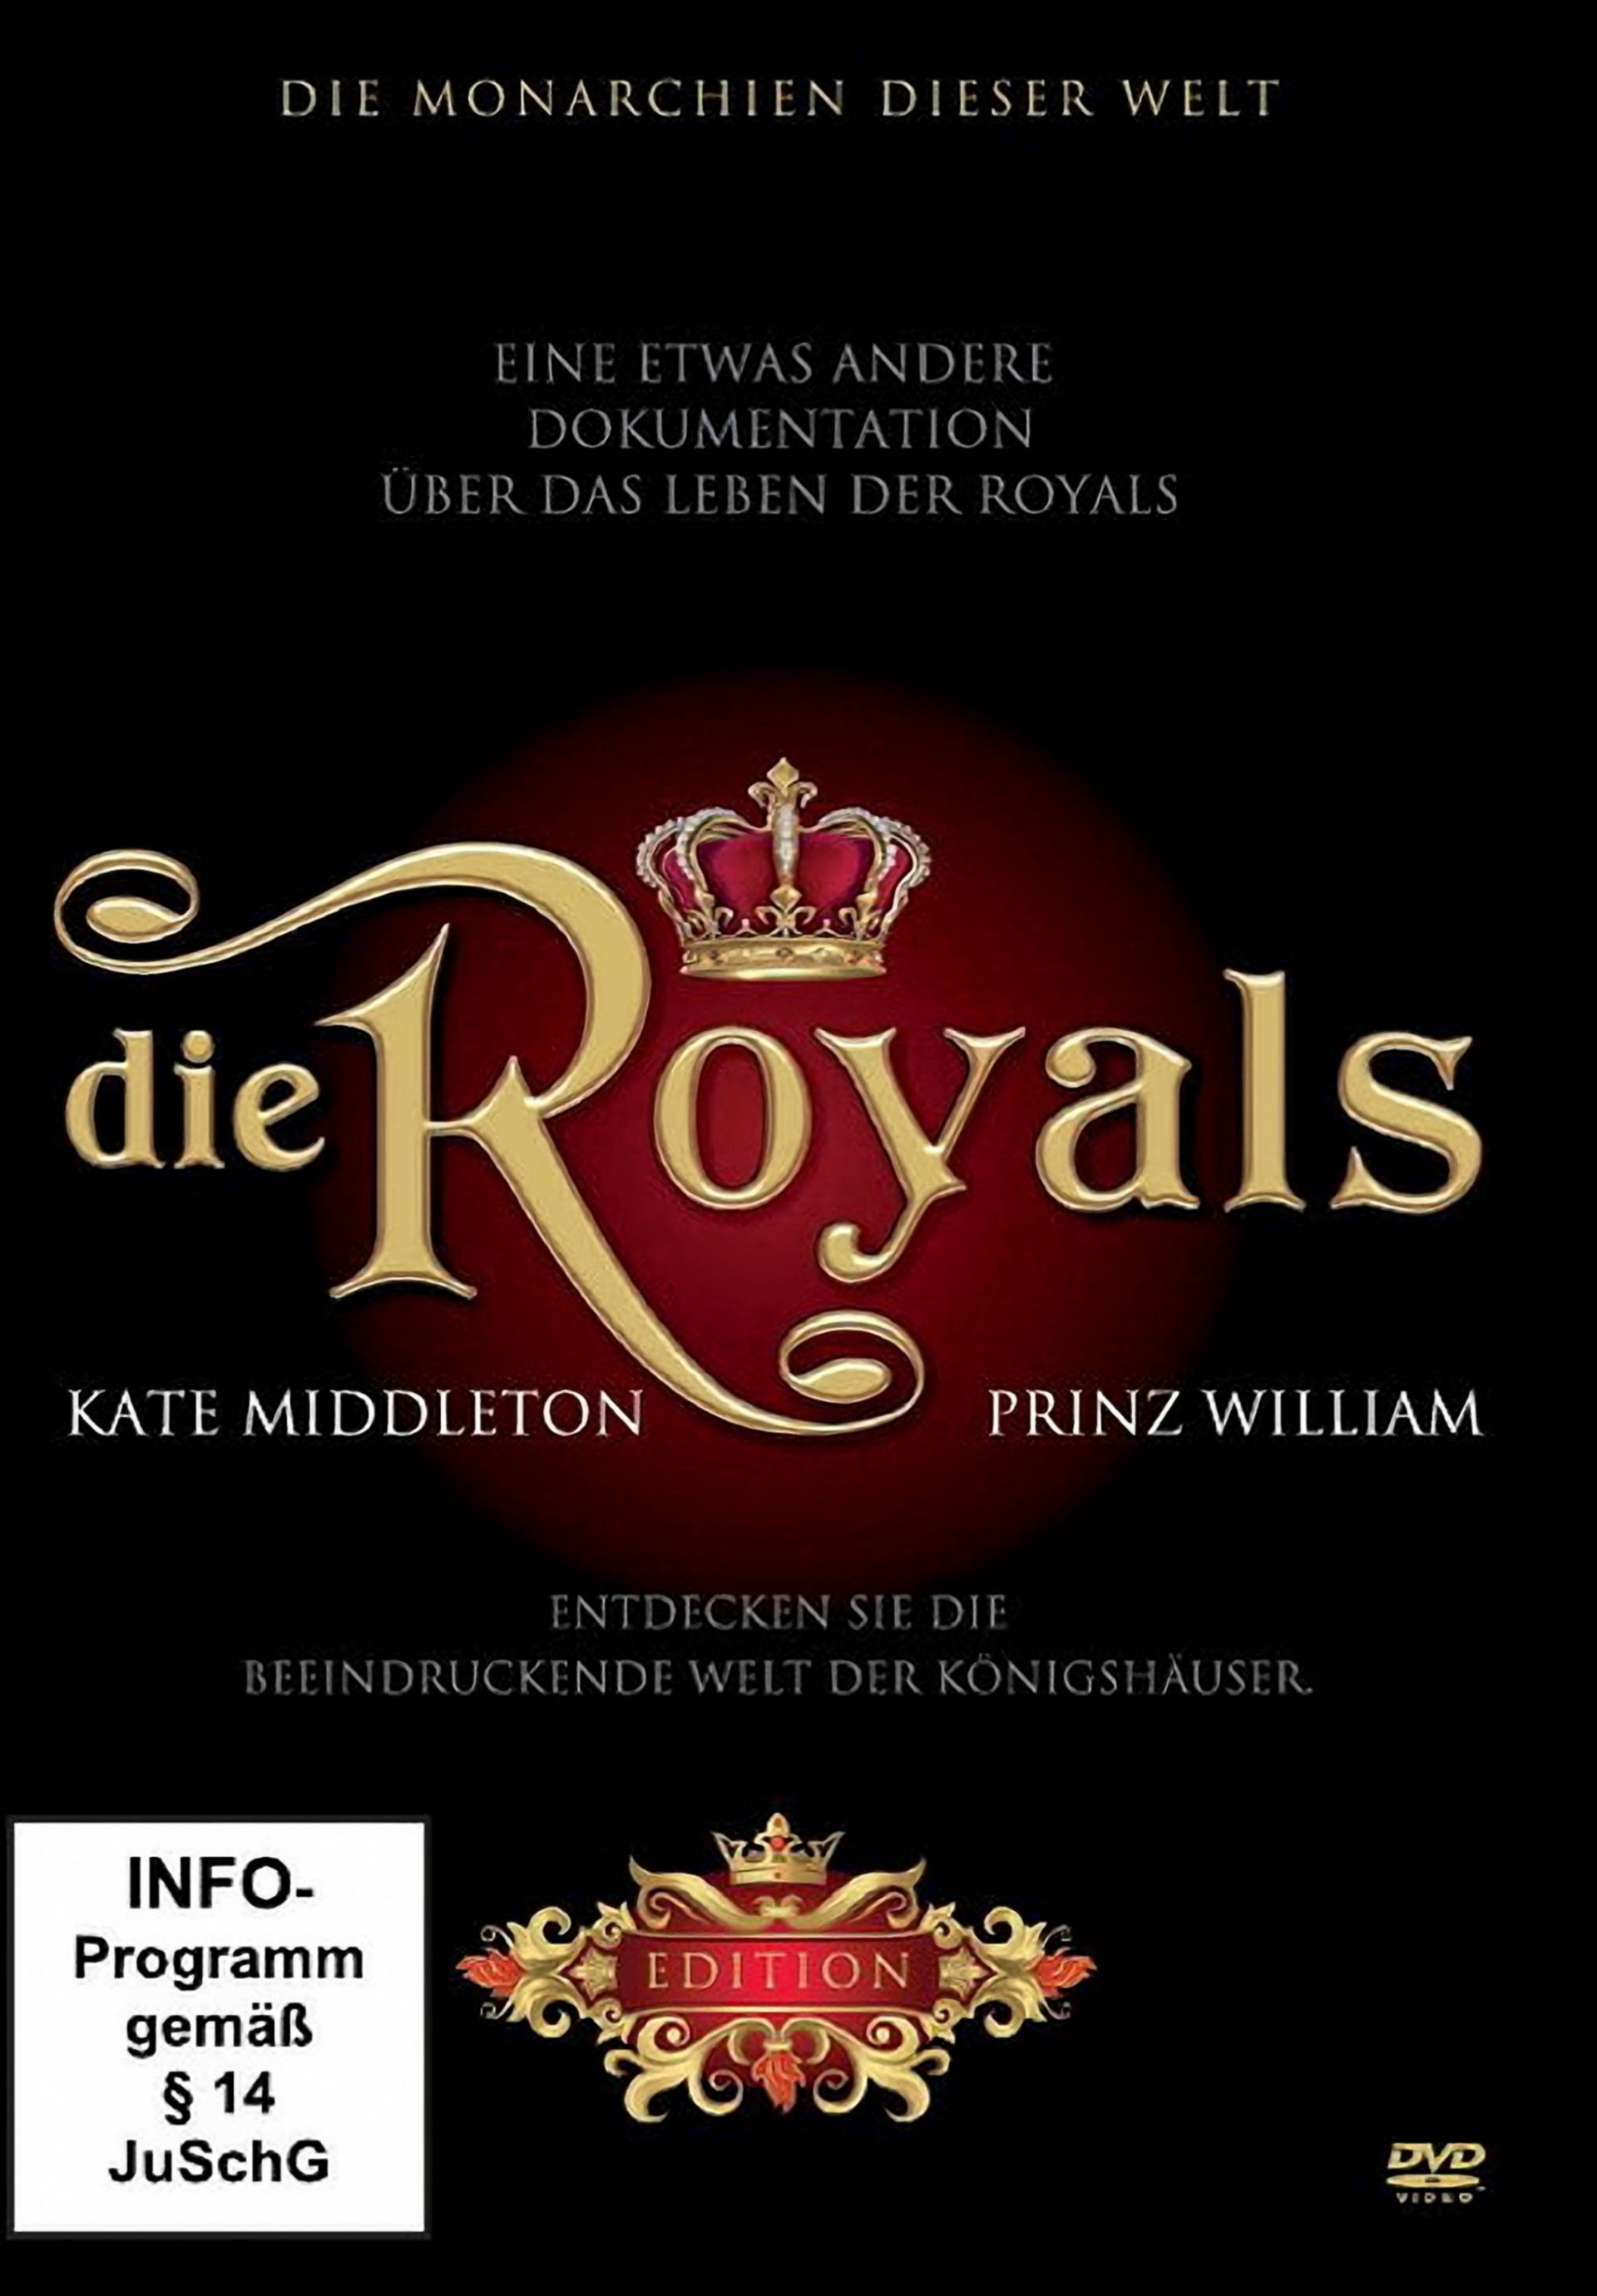 Die Royals - Kate Middleton & Prinz William von dtp